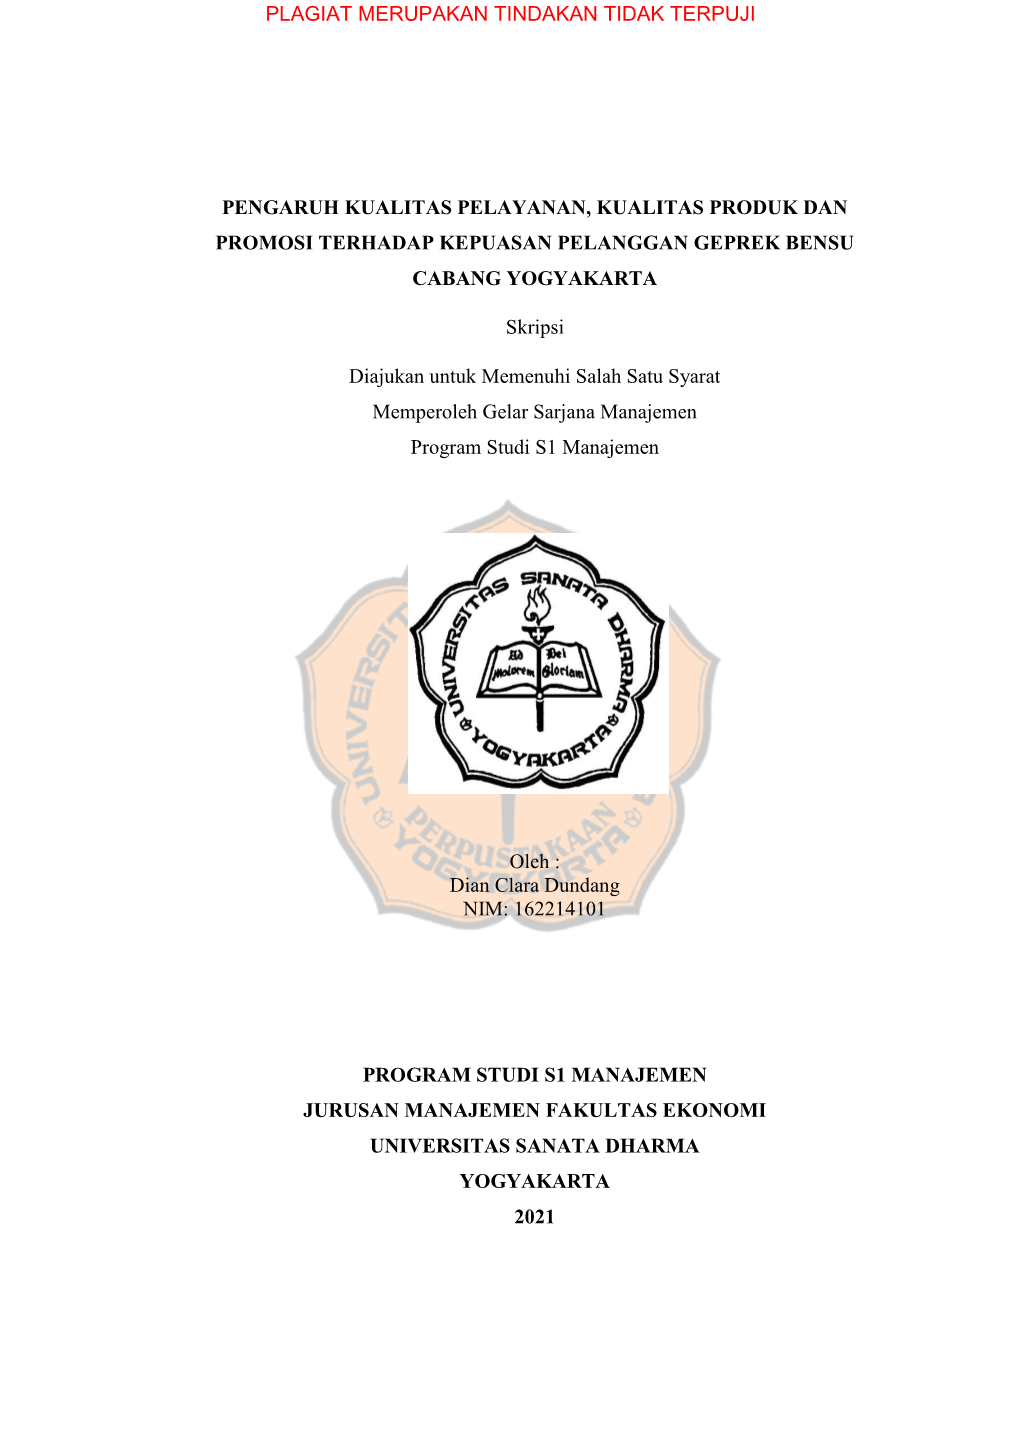 Pengaruh Kualitas Pelayanan, Kualitas Produk Dan Promosi Terhadap Kepuasan Pelanggan Geprek Bensu Cabang Yogyakarta